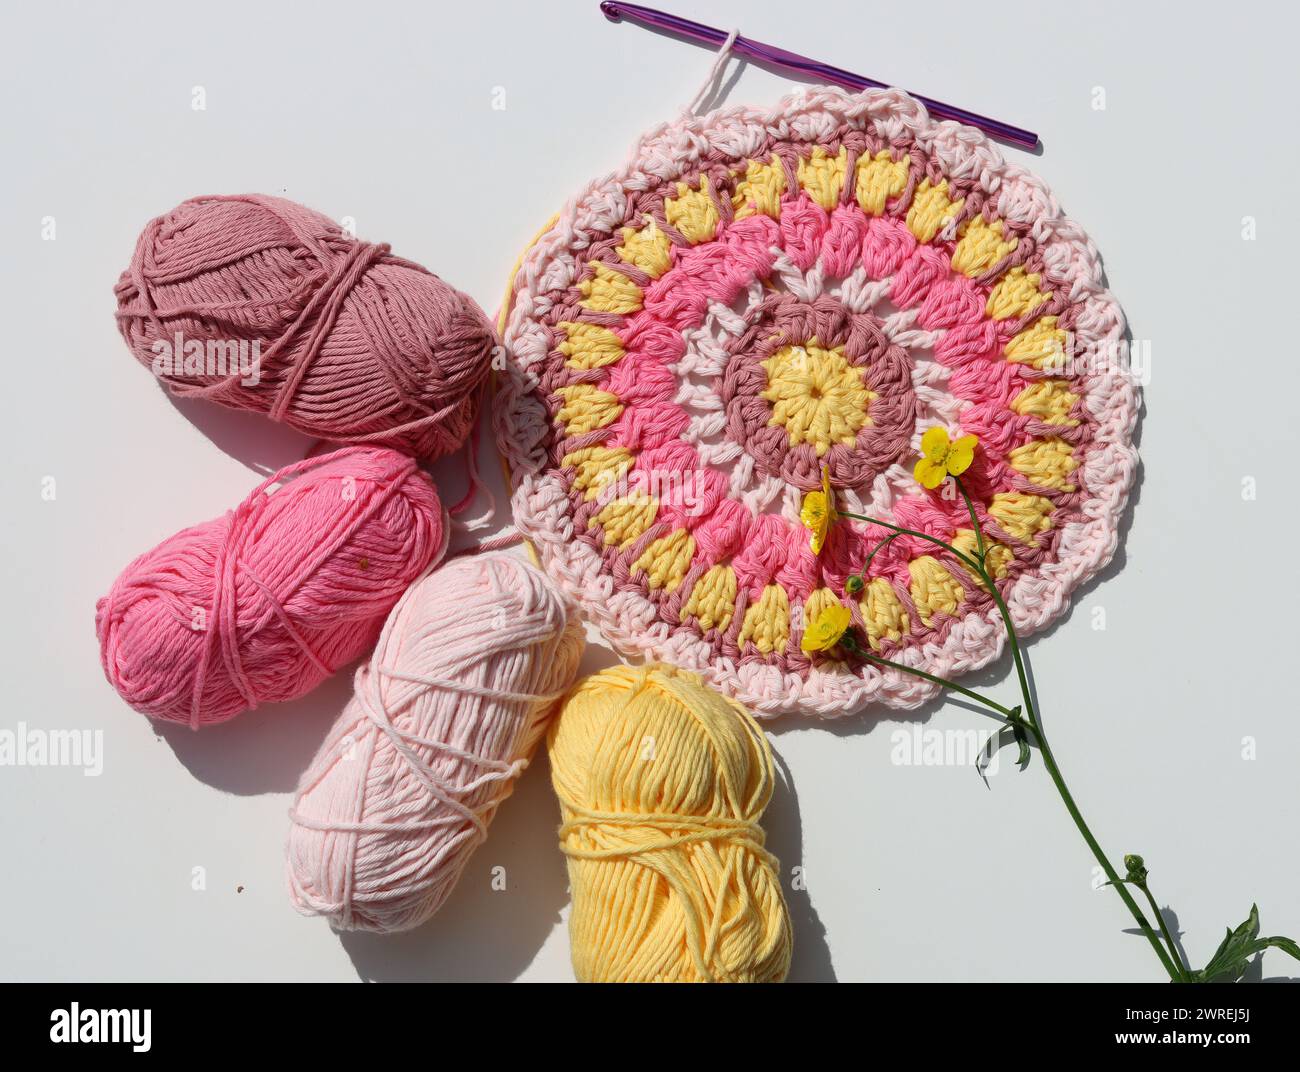 Photo vue de dessus de boules de fil de coton, crochet crochet et fleurs. Elément décoratif fait à la main. Banque D'Images